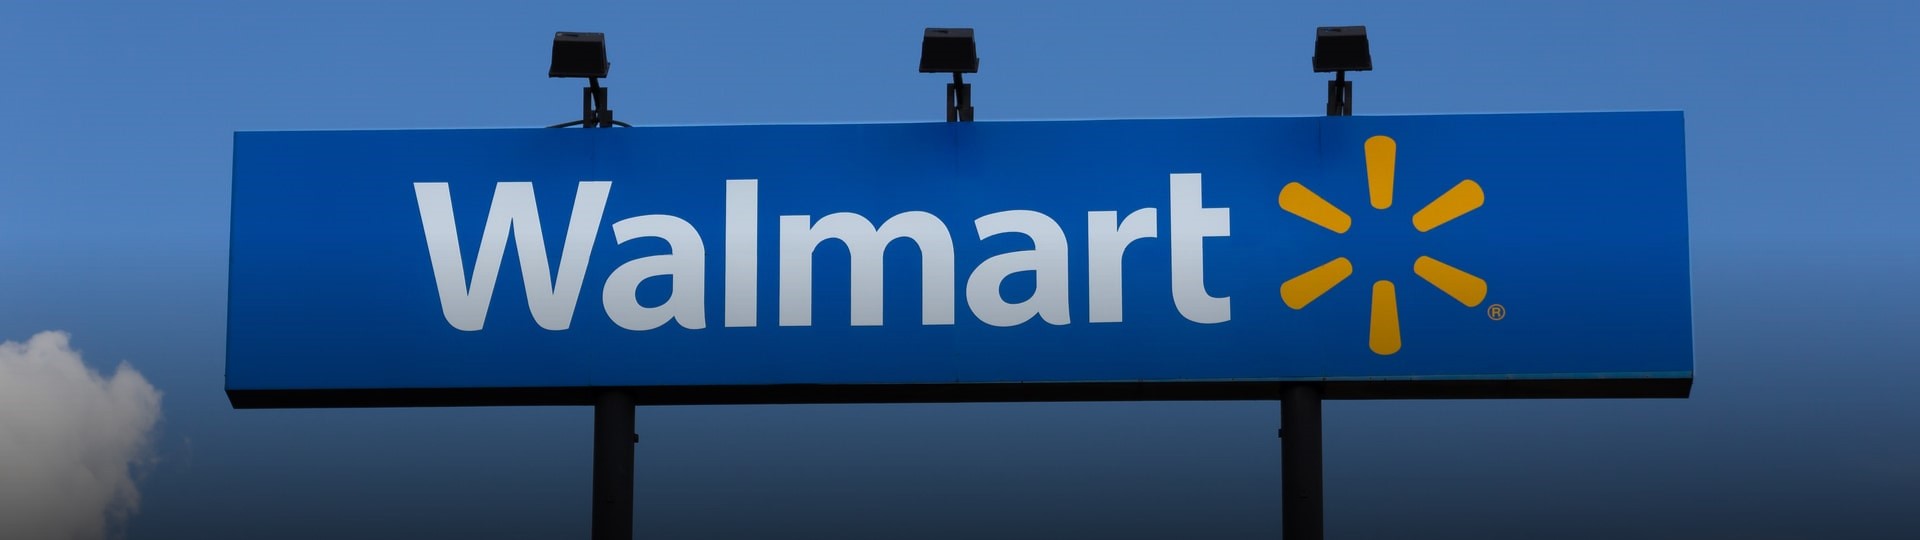 Walmart zvýšil čtvrtletní provozní zisk o 32 procent